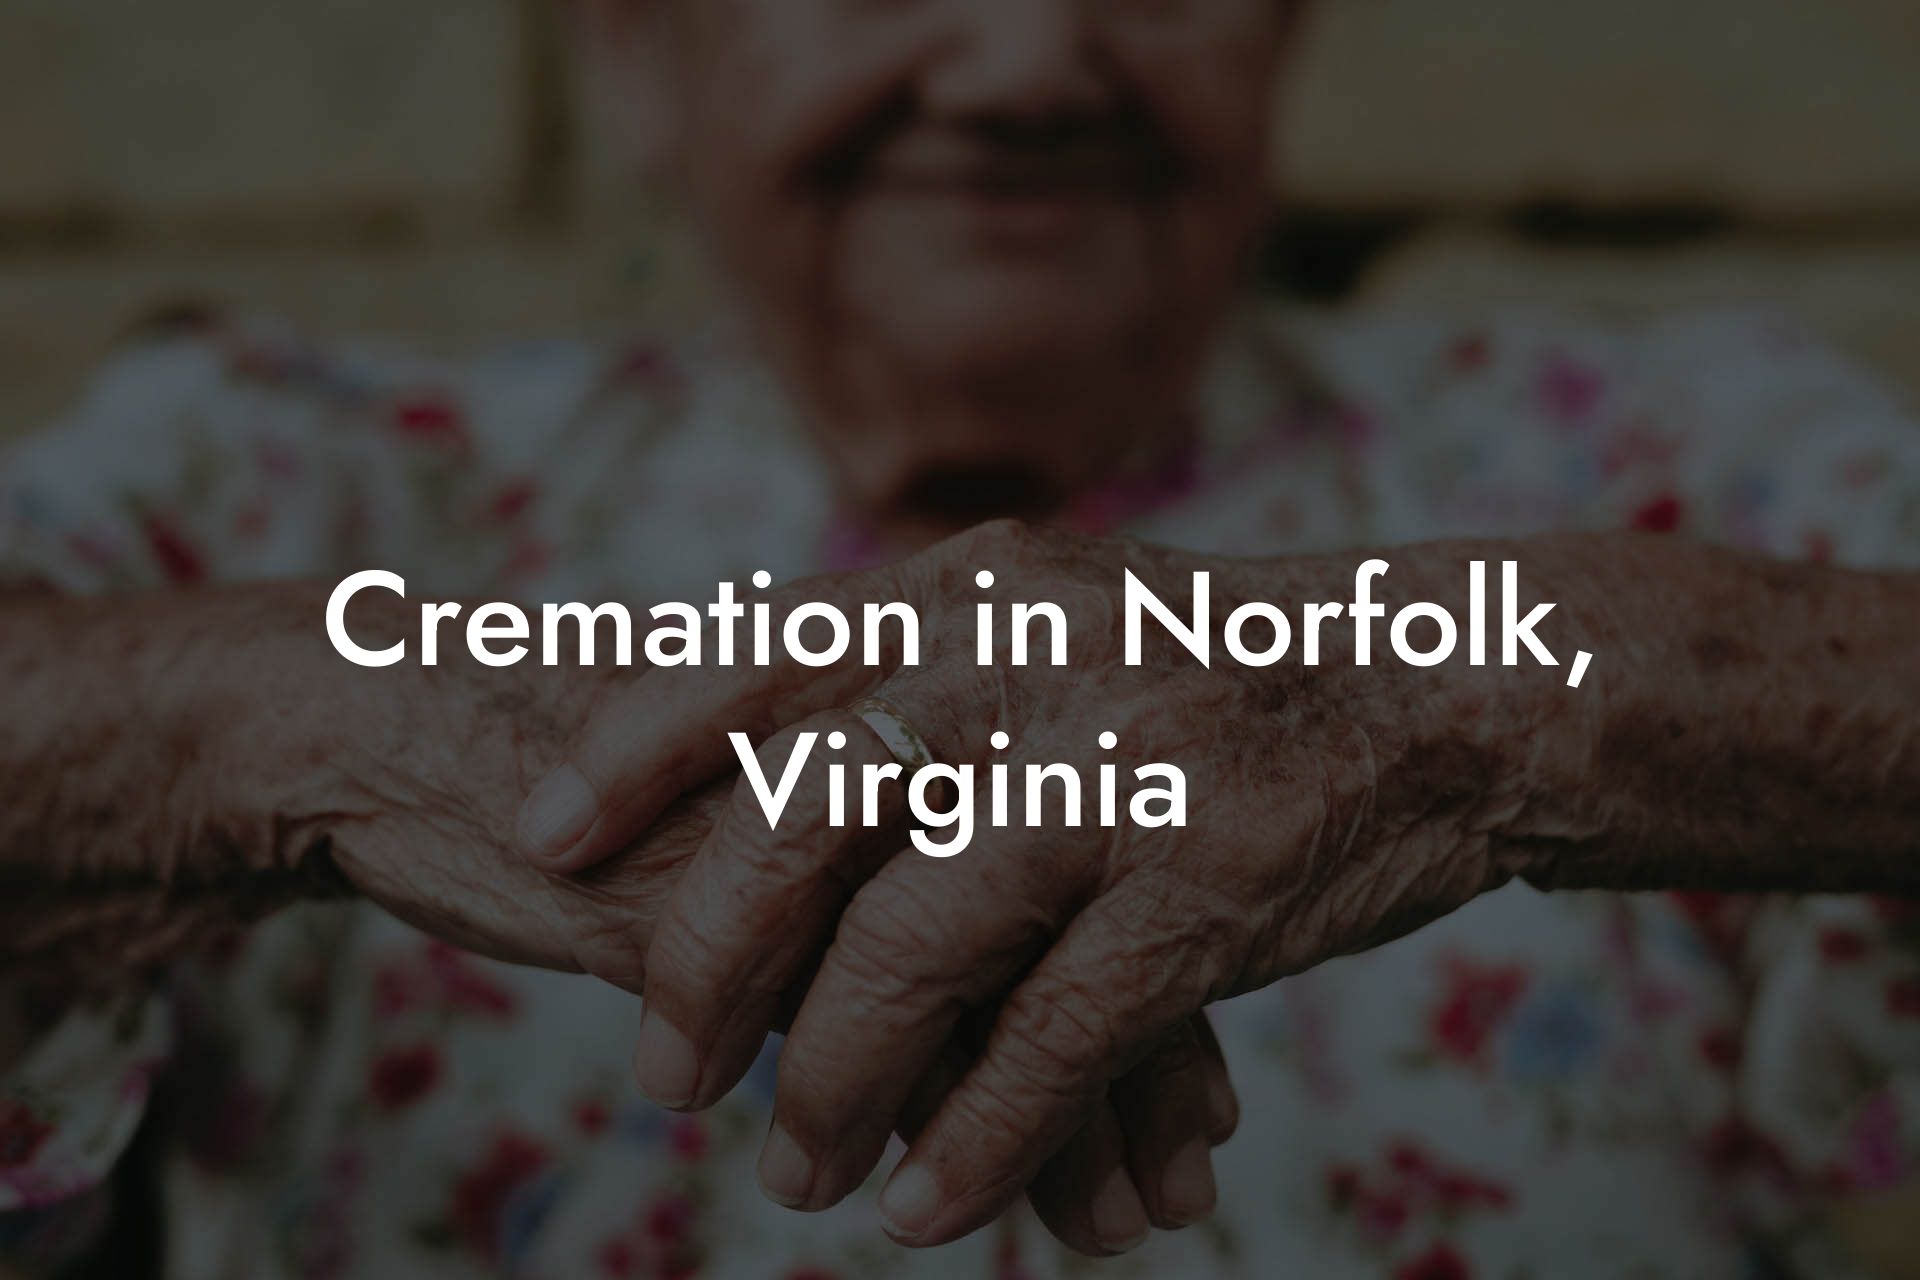 Cremation in Norfolk, Virginia